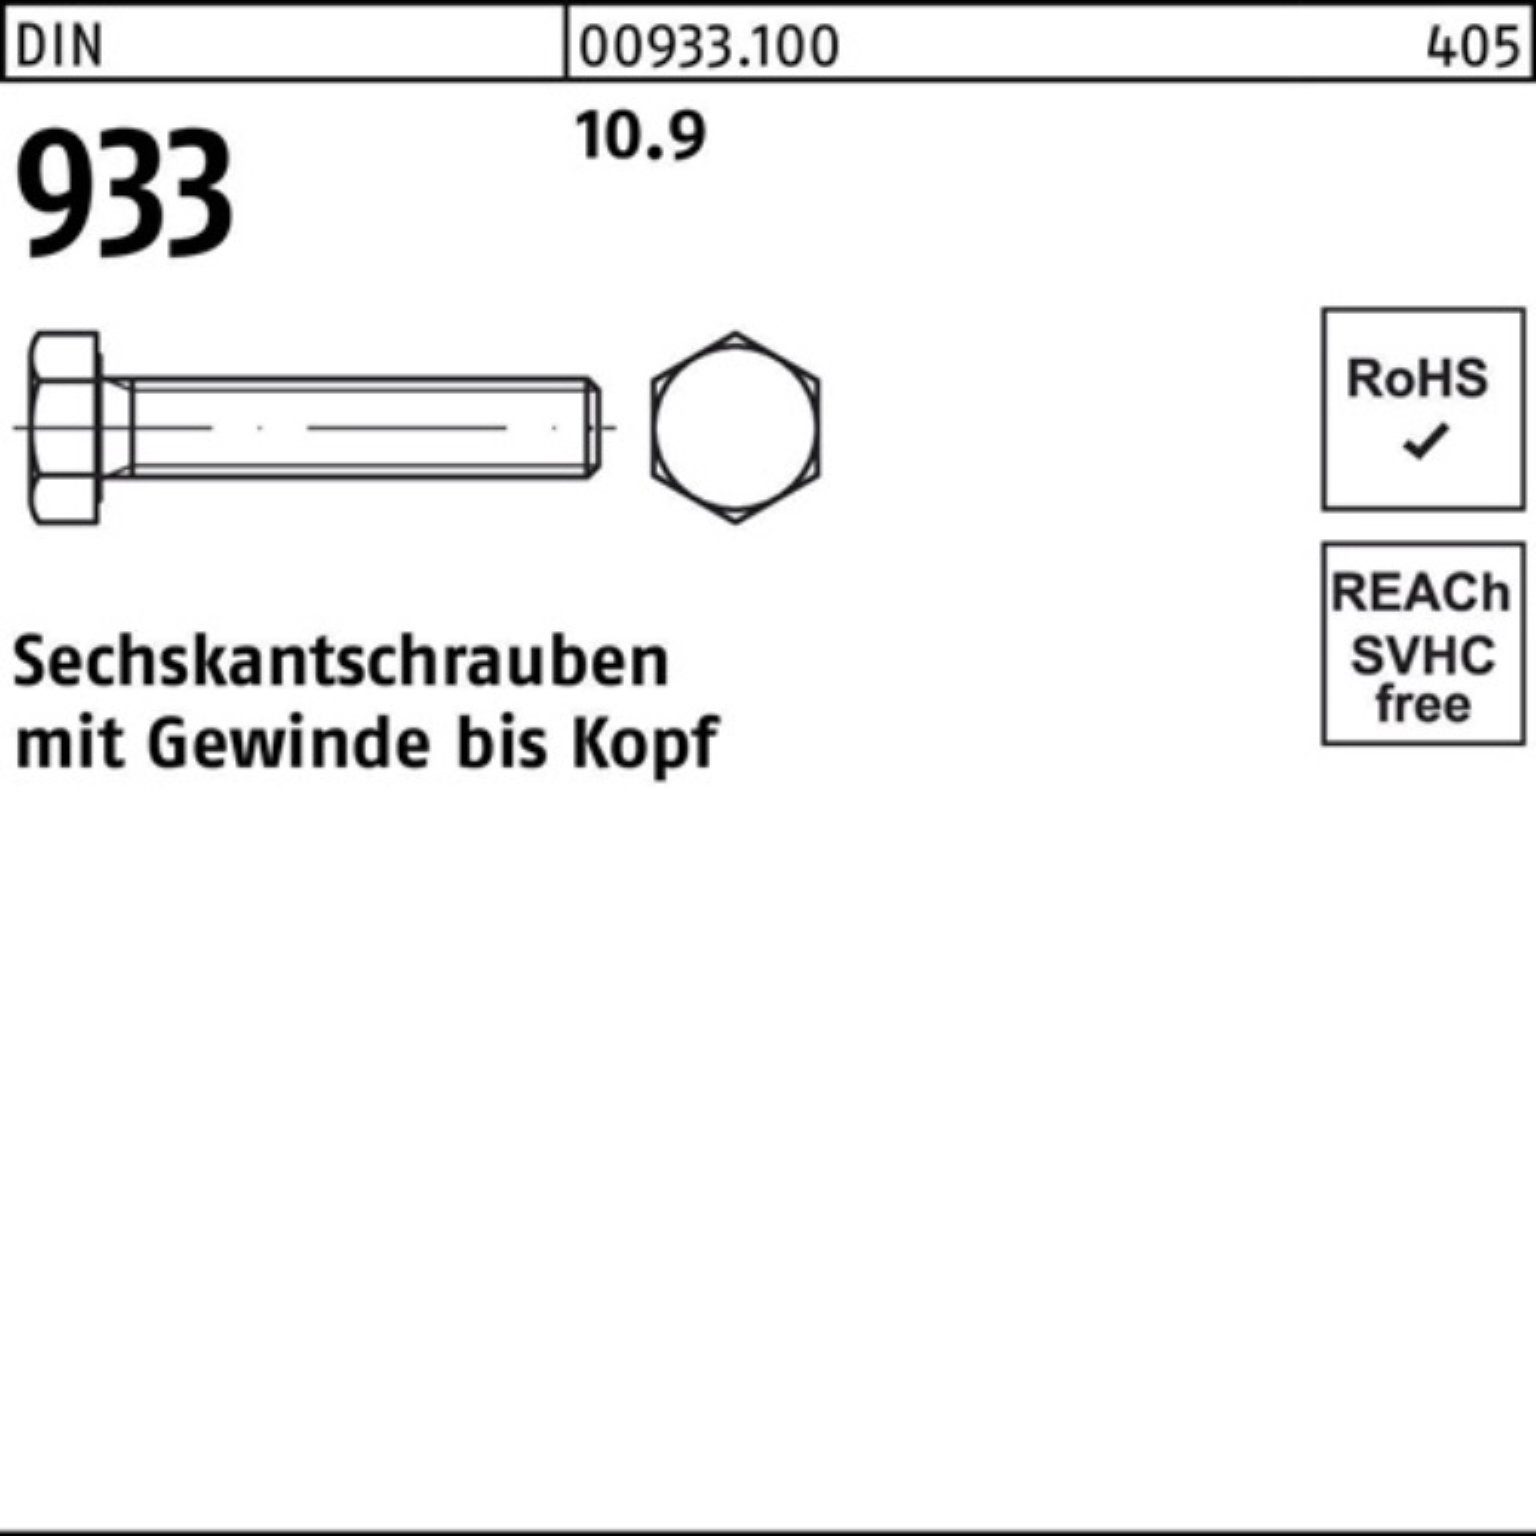 Reyher Sechskantschraube DIN 10 90 Sechskantschraube Stück M27x VG 10.9 Pack 933 DIN 933 100er